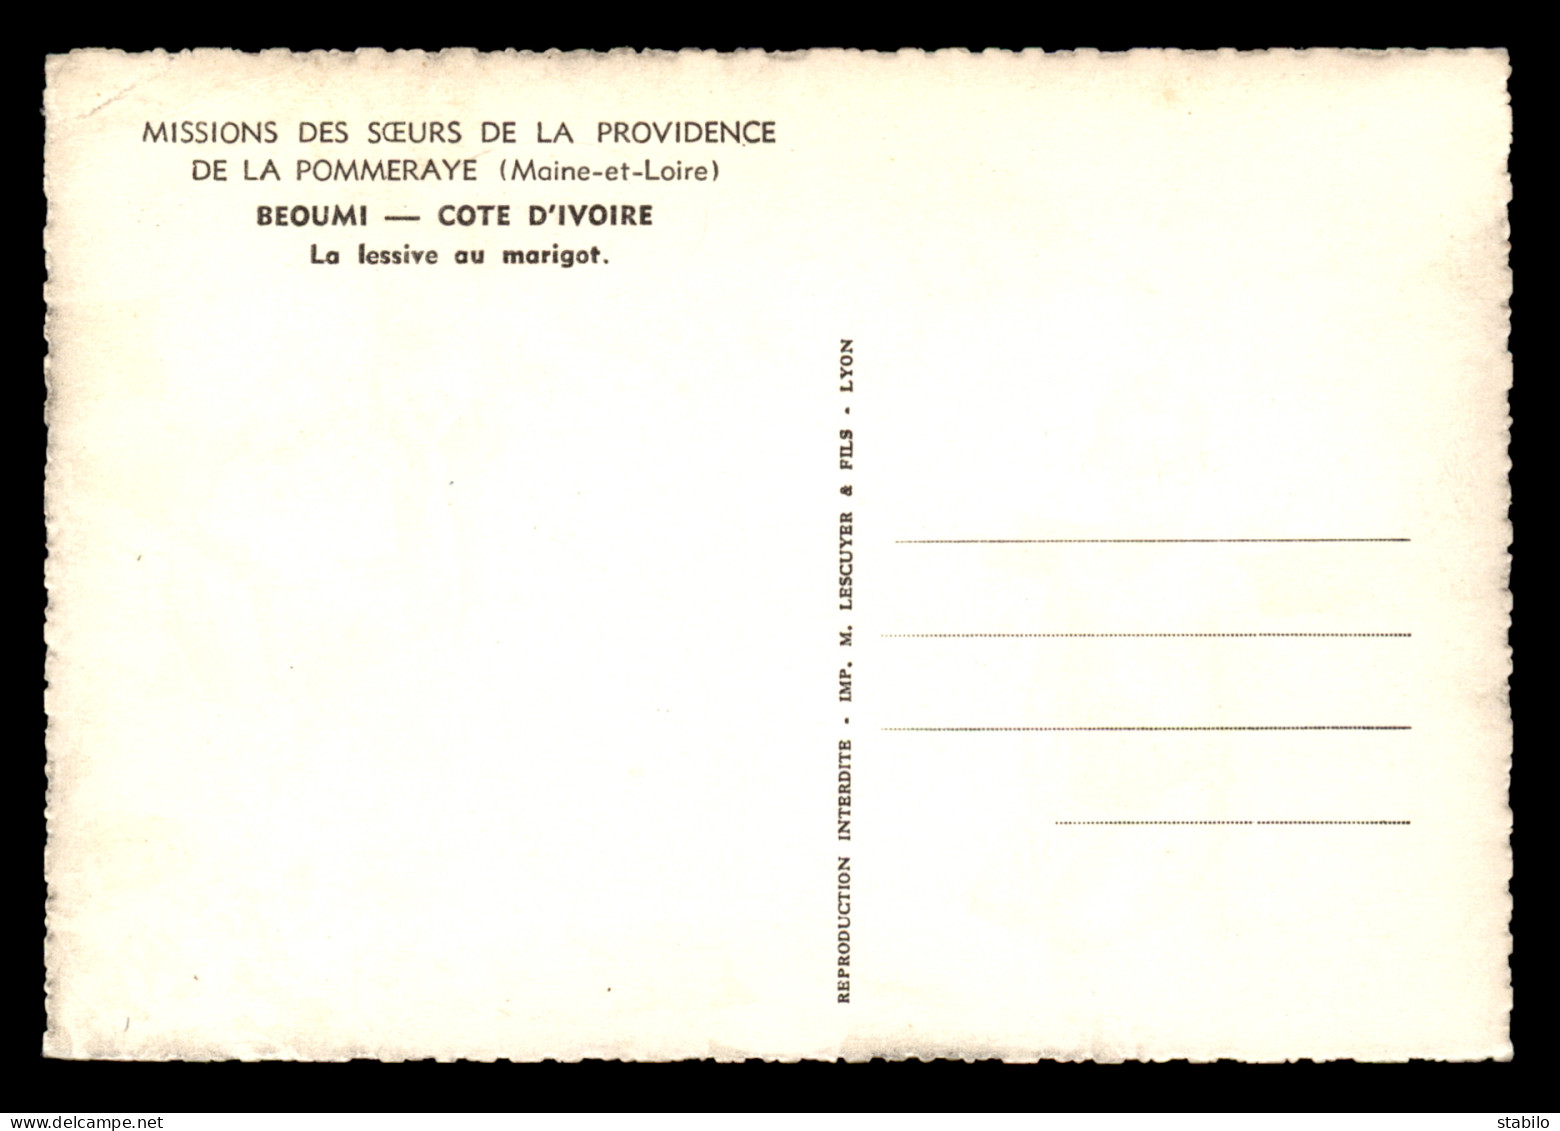 MISSIONS - SOEURS DE LA PROVIDENCE DE LA POMMERAYE (MAINE-ET-LOIRE) - COTE D'IVOIRE - BEOUMI - LA LESSIVE AU MARIGOT - Missions